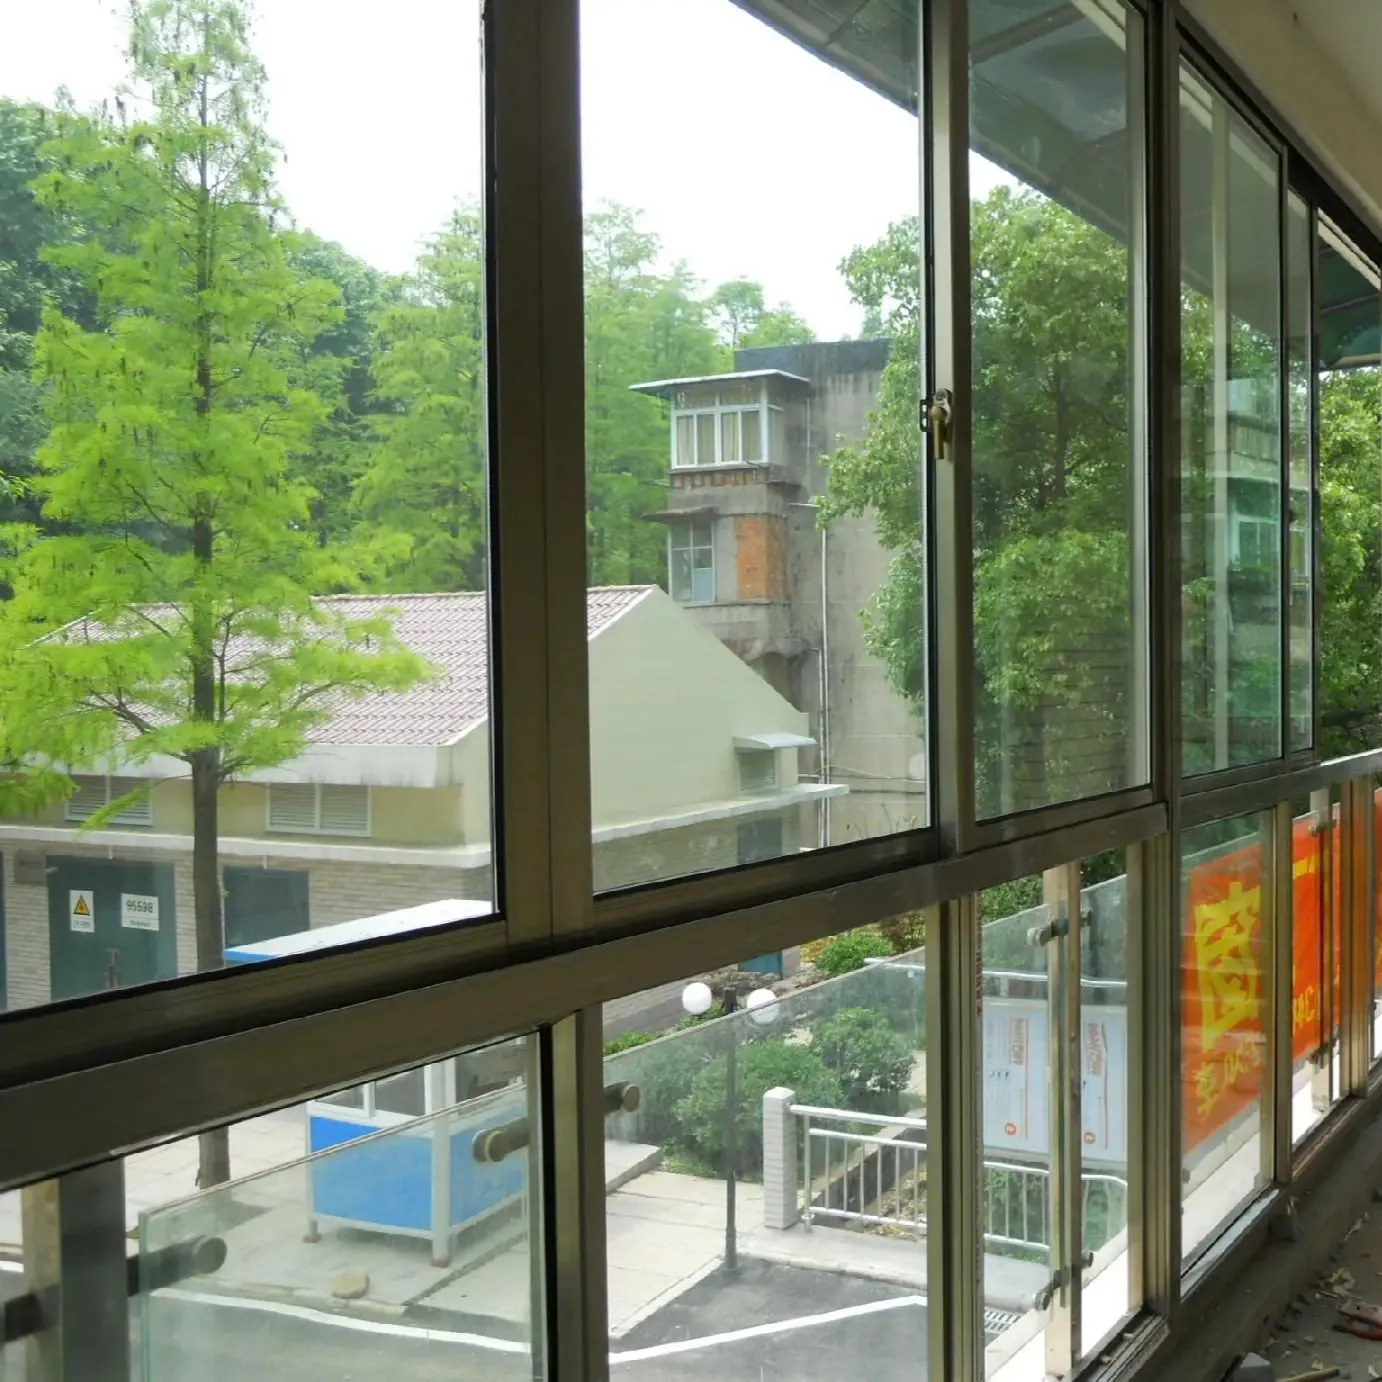 Fenêtres coulissantes en aluminium avec stores Verre de qualité supérieure Intérieur de bureau Noir Design graphique Horizontal Moderne Fibre de verre